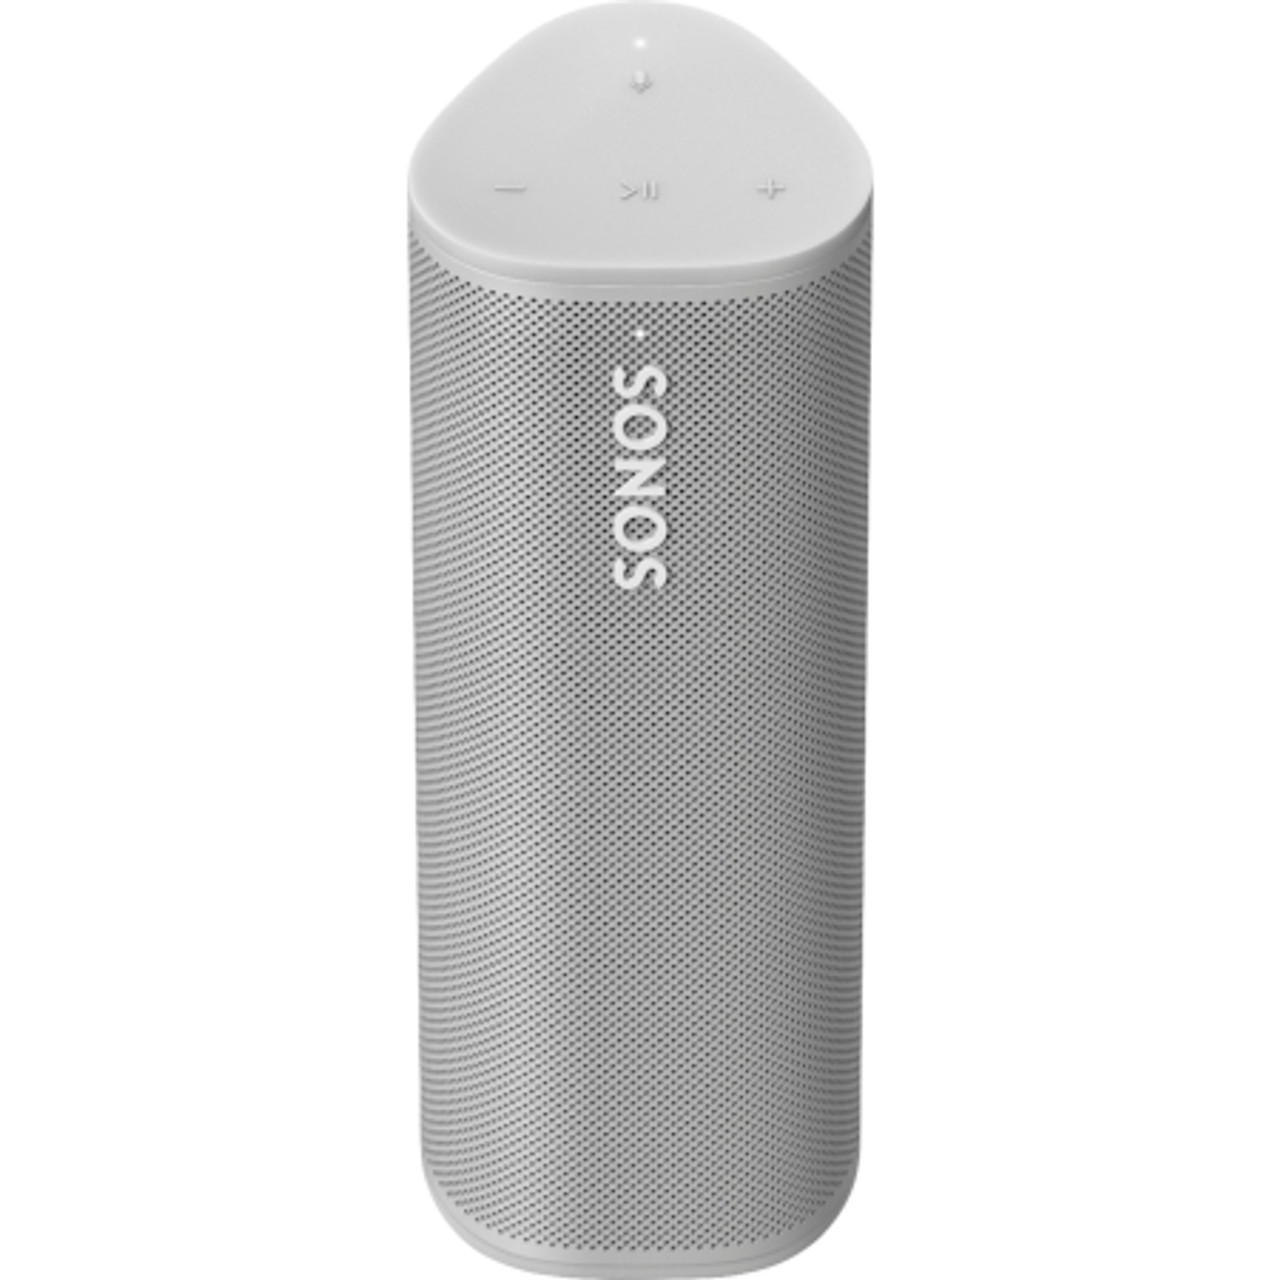 ontsmettingsmiddel zadel Thriller Shop | SONOS Roam Ultra Portable Smart Speaker - White